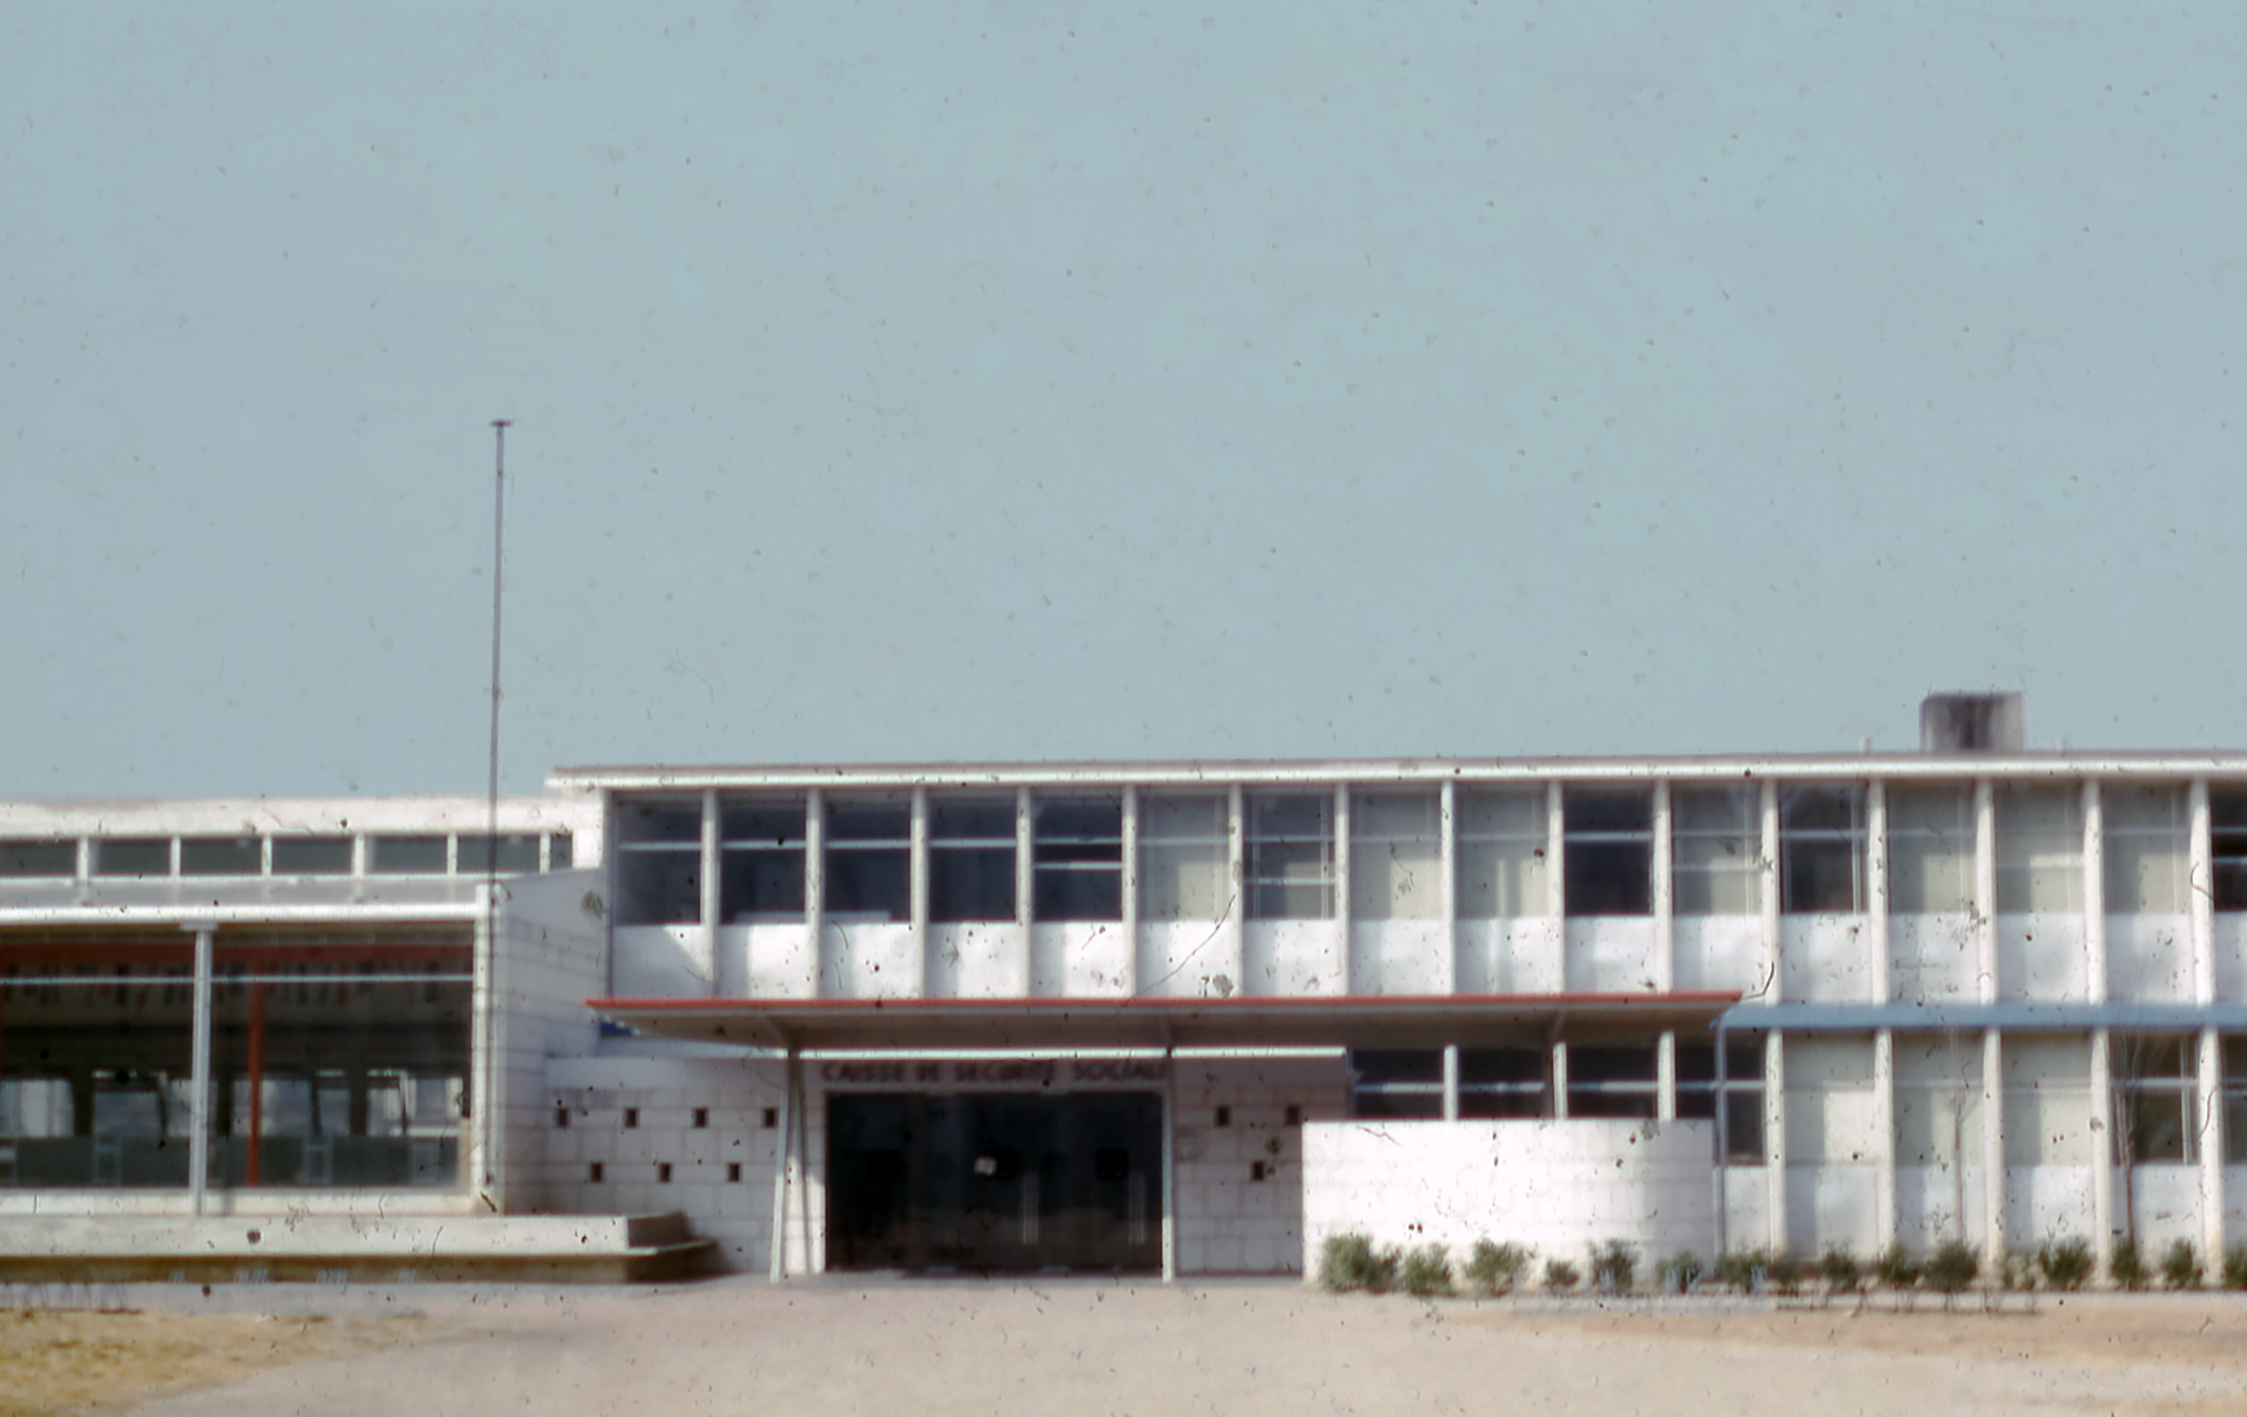 Sécurité Sociale building, Le Mans (architect J. Le Couteur, 1951). Pressed steel awning, designed by Jean Prouvé, 1953–1954.